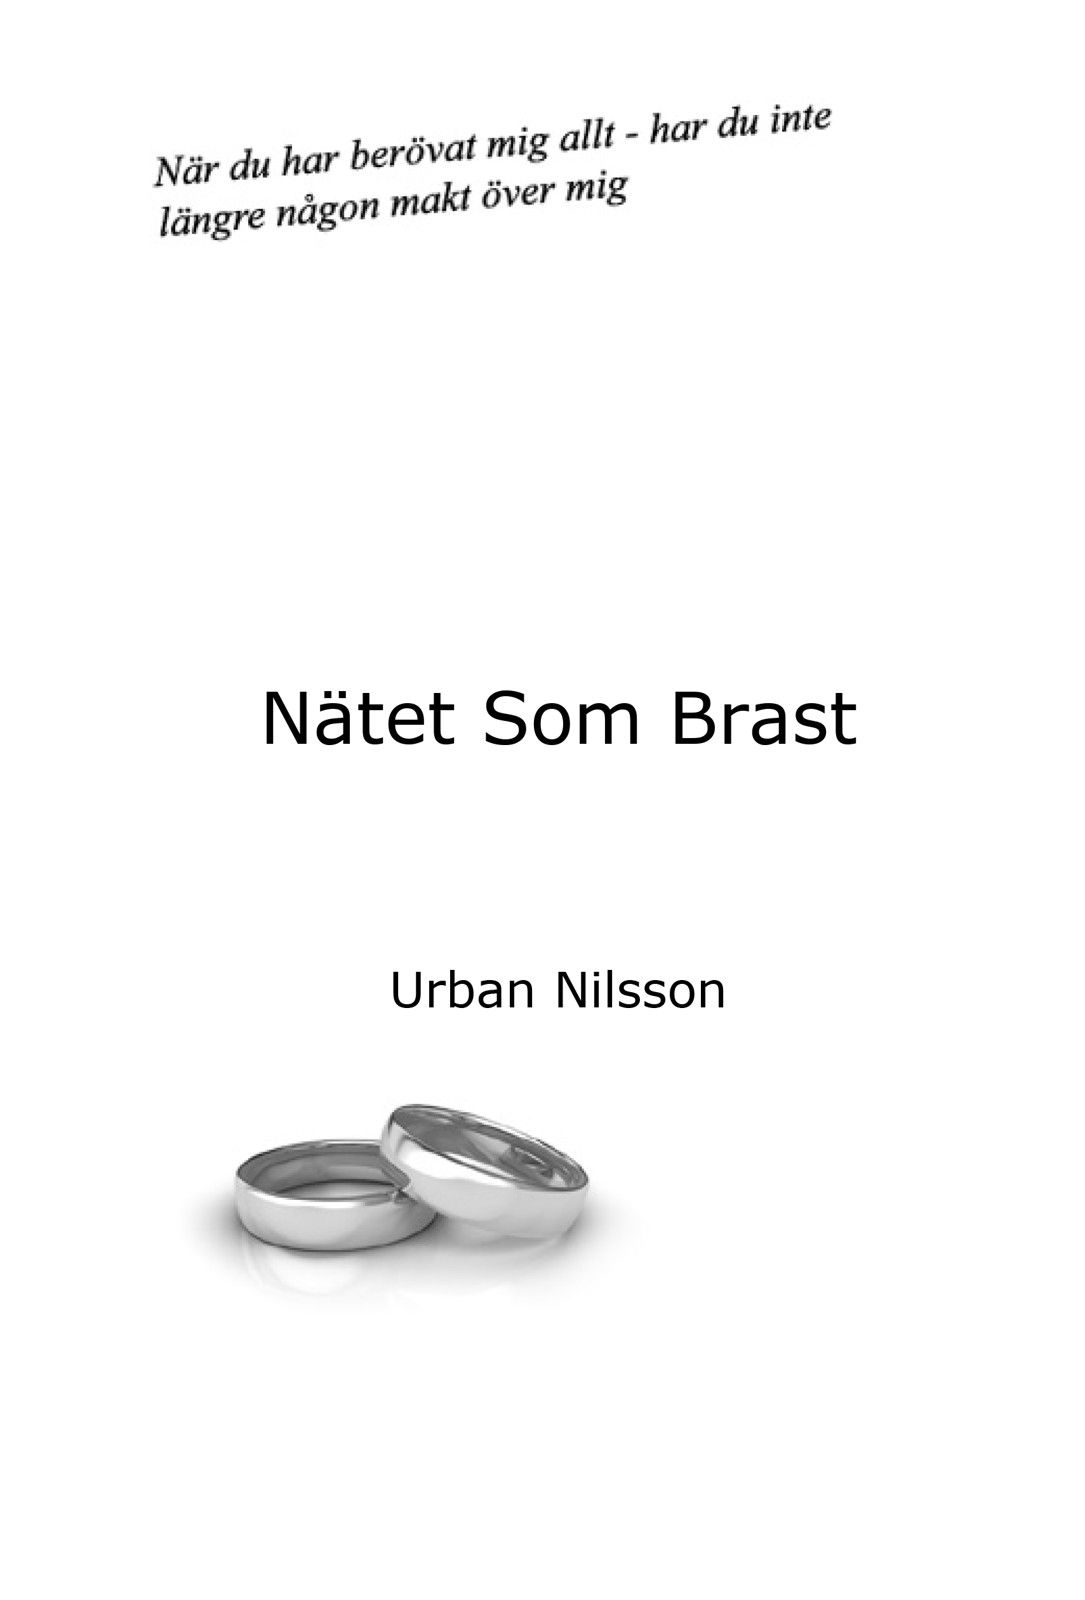 Nätet som Brast, eBook by Urban Nilsson